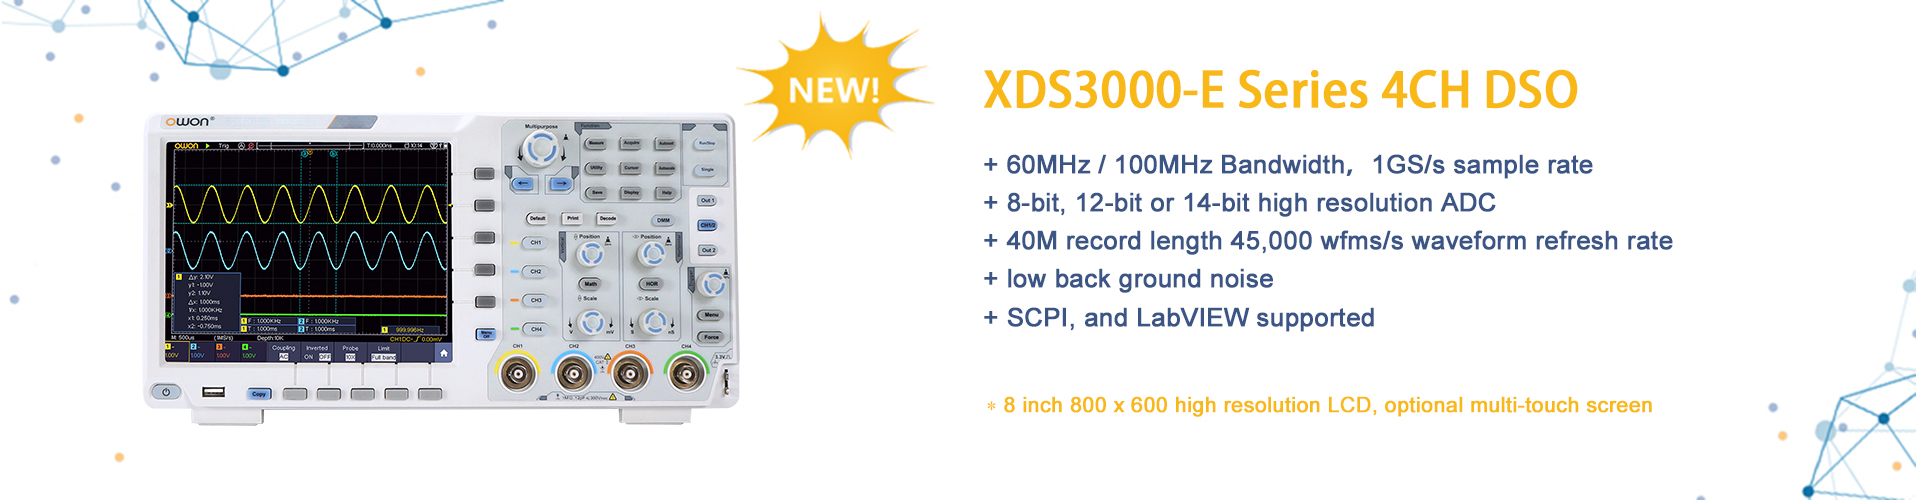 XDS3000-E